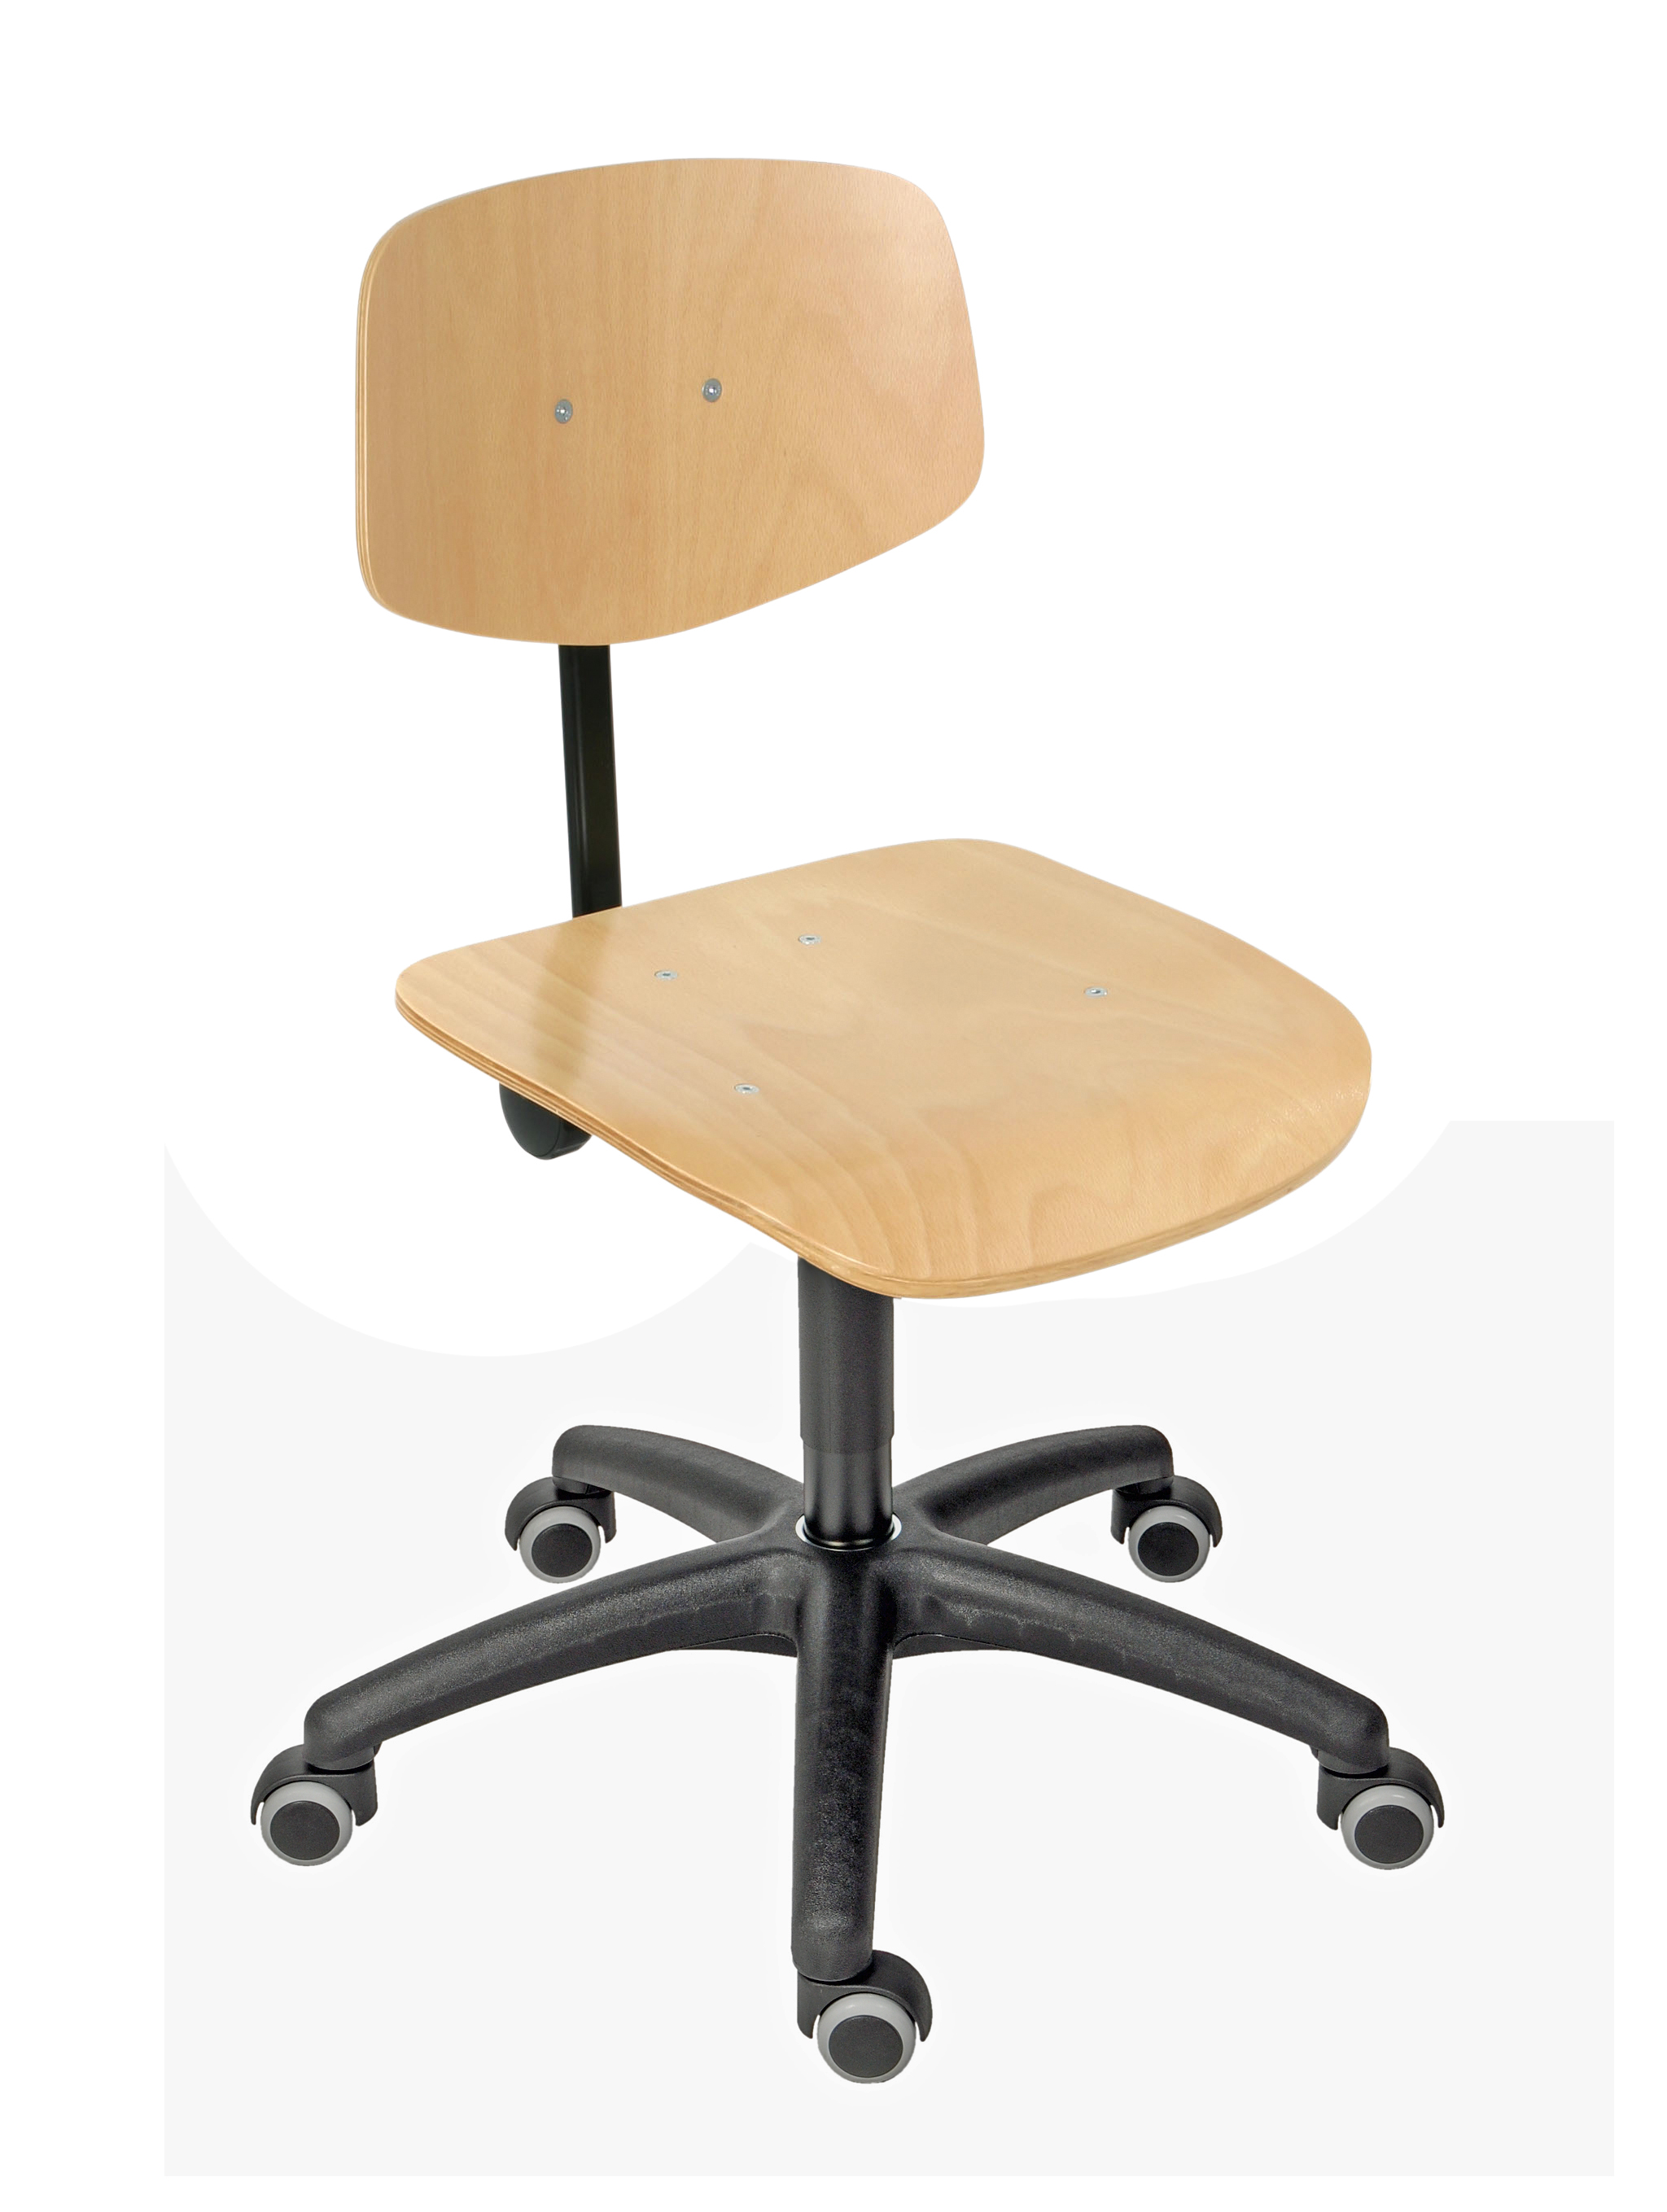 Arbeitsstuhl Arlington mit kleiner Rückenlehne | Sitzhöhe 45-64cm | Ø 63cm | Tragfähigkeit 110kg | Buche-Sitz | Kunststoff-Fußkreuz mit Rollen | Buche